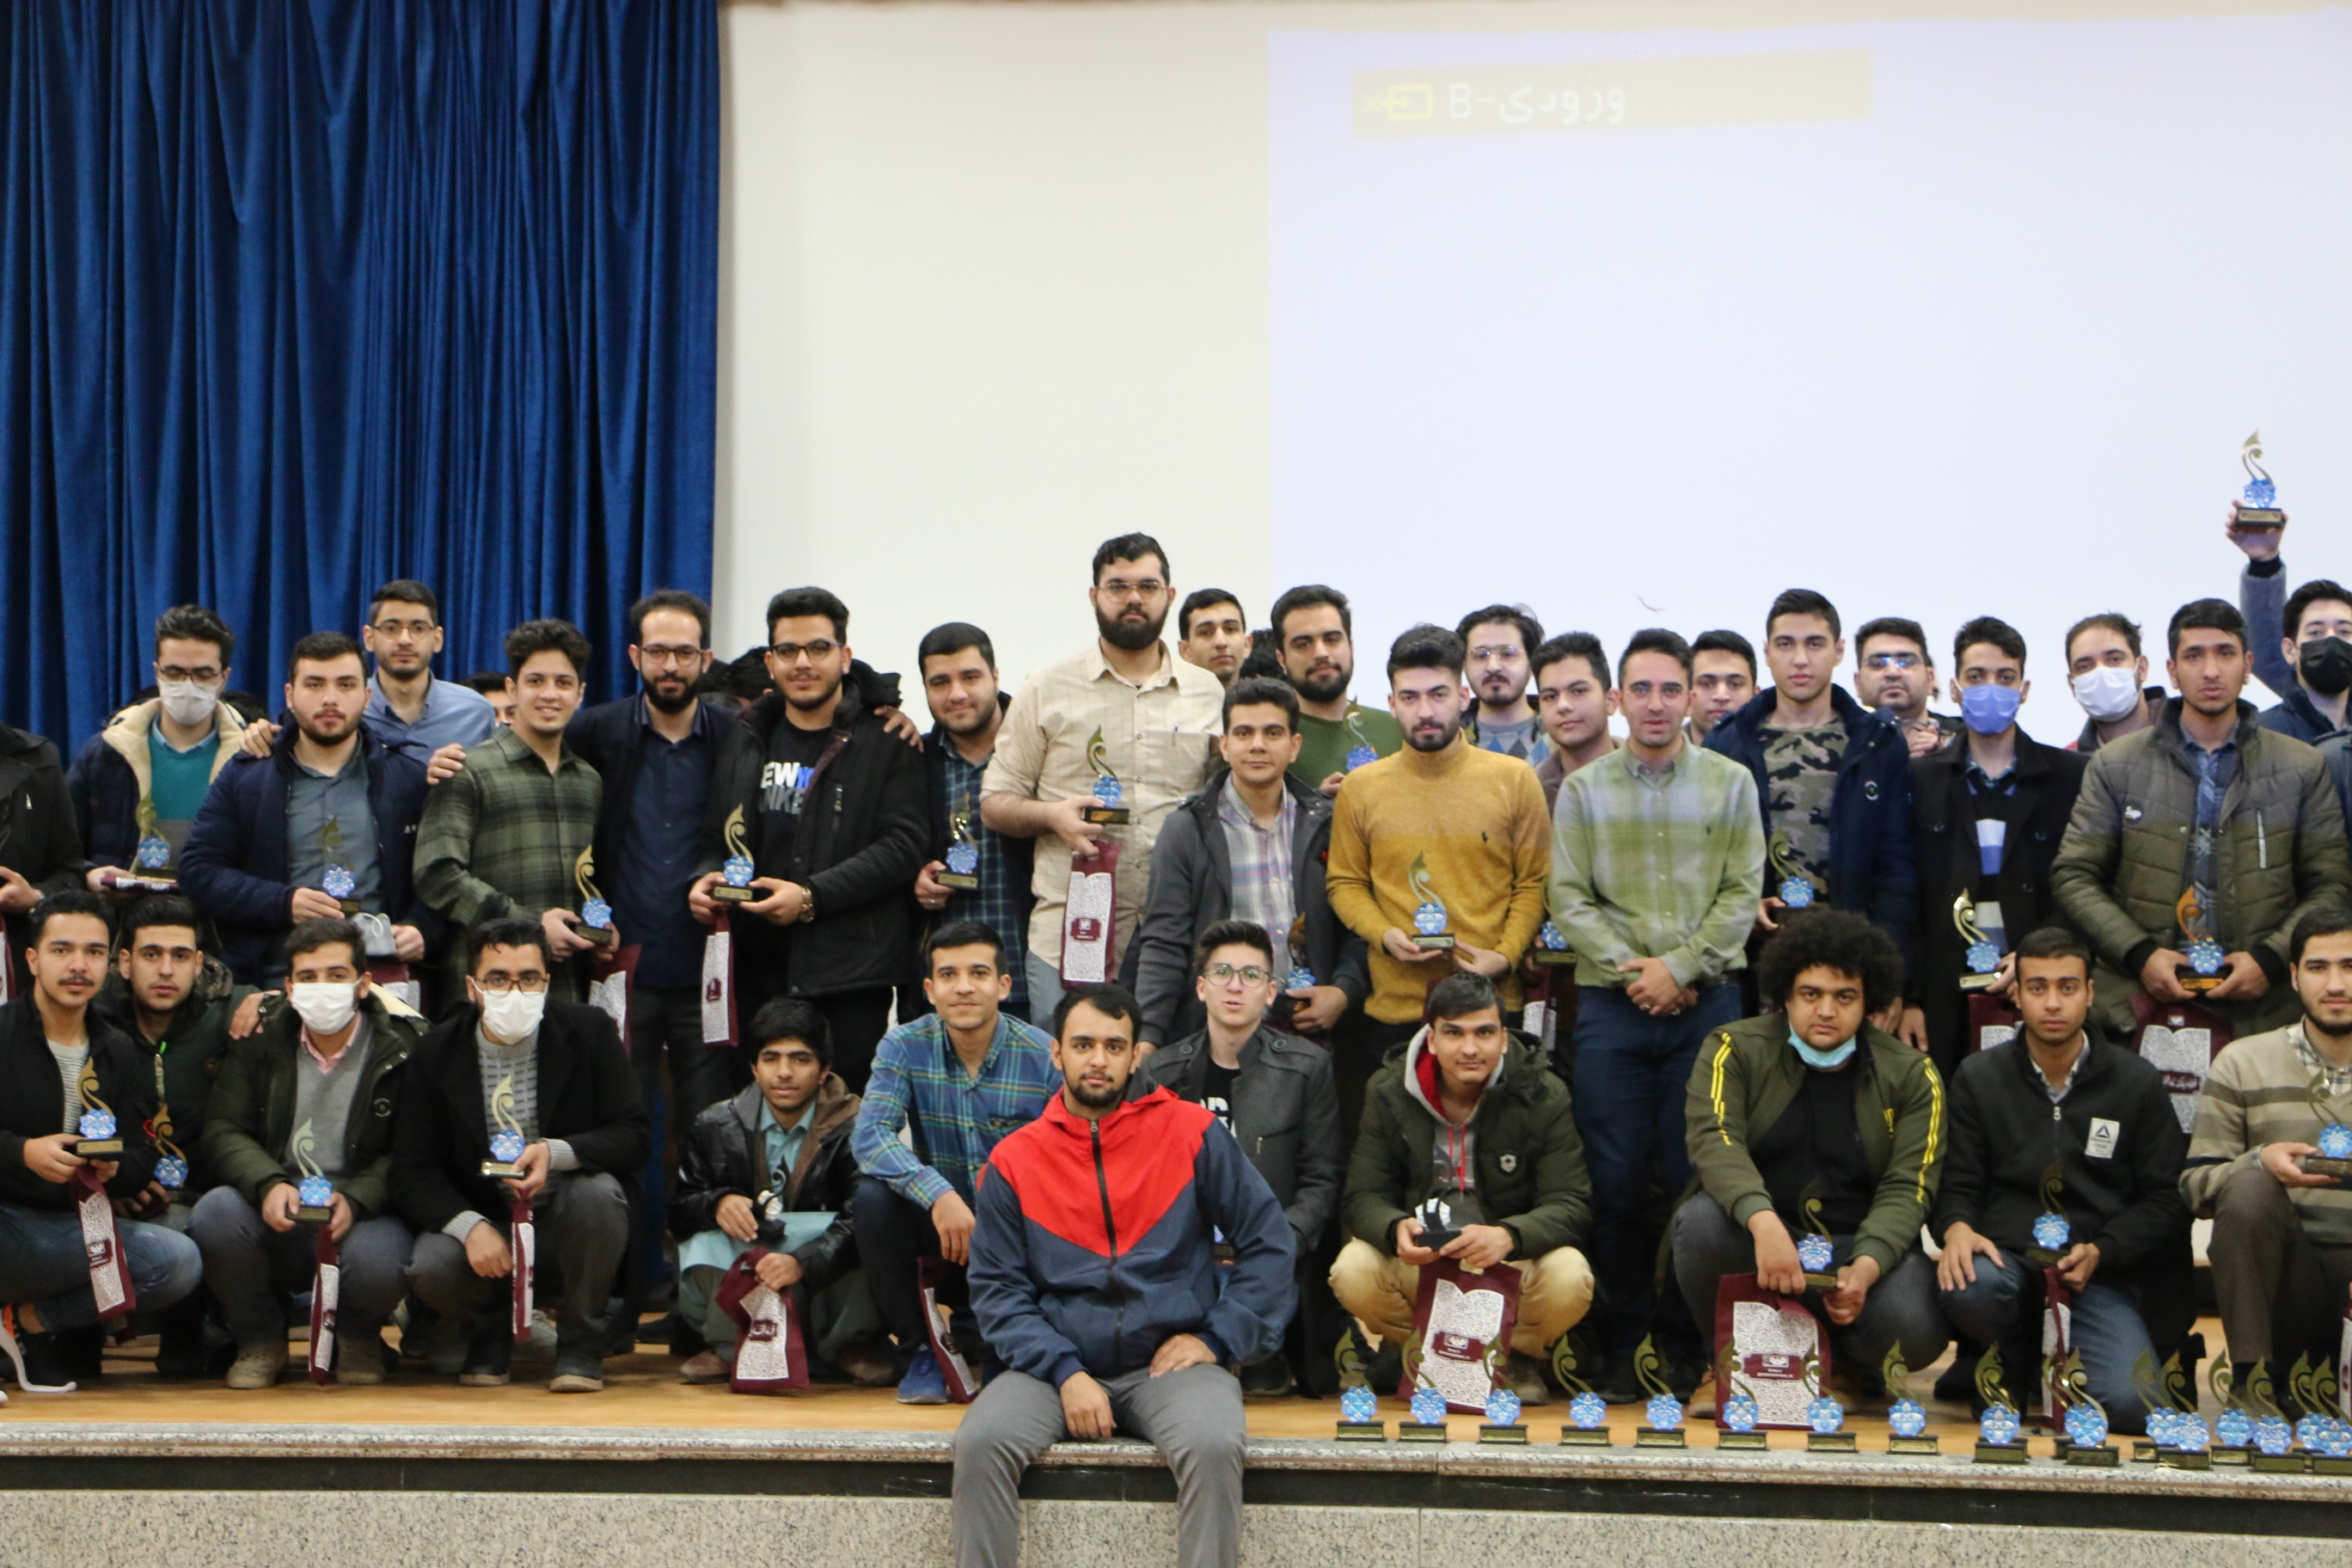 اردوی راهیان پیشرفت با حضور ۱۲۰ دانشجو در اصفهان برگزار شد